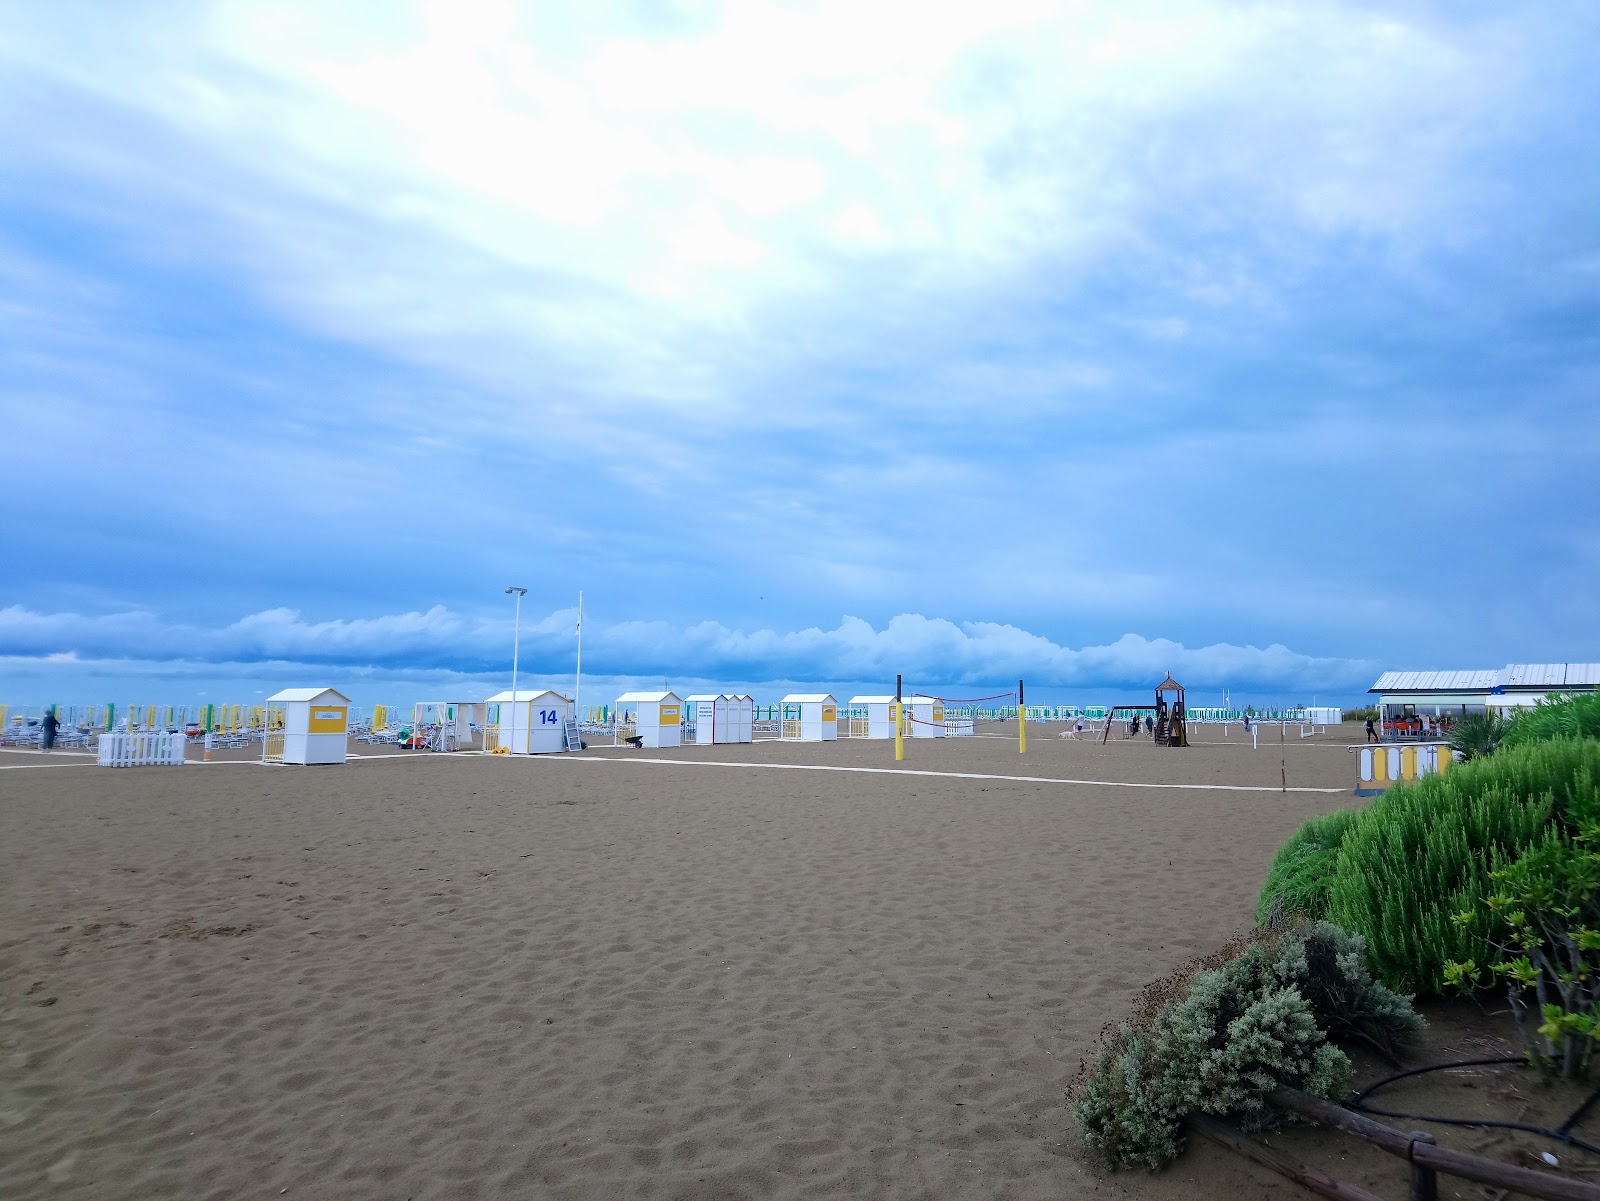 Zdjęcie Spiaggia di Caorle z powierzchnią jasny piasek